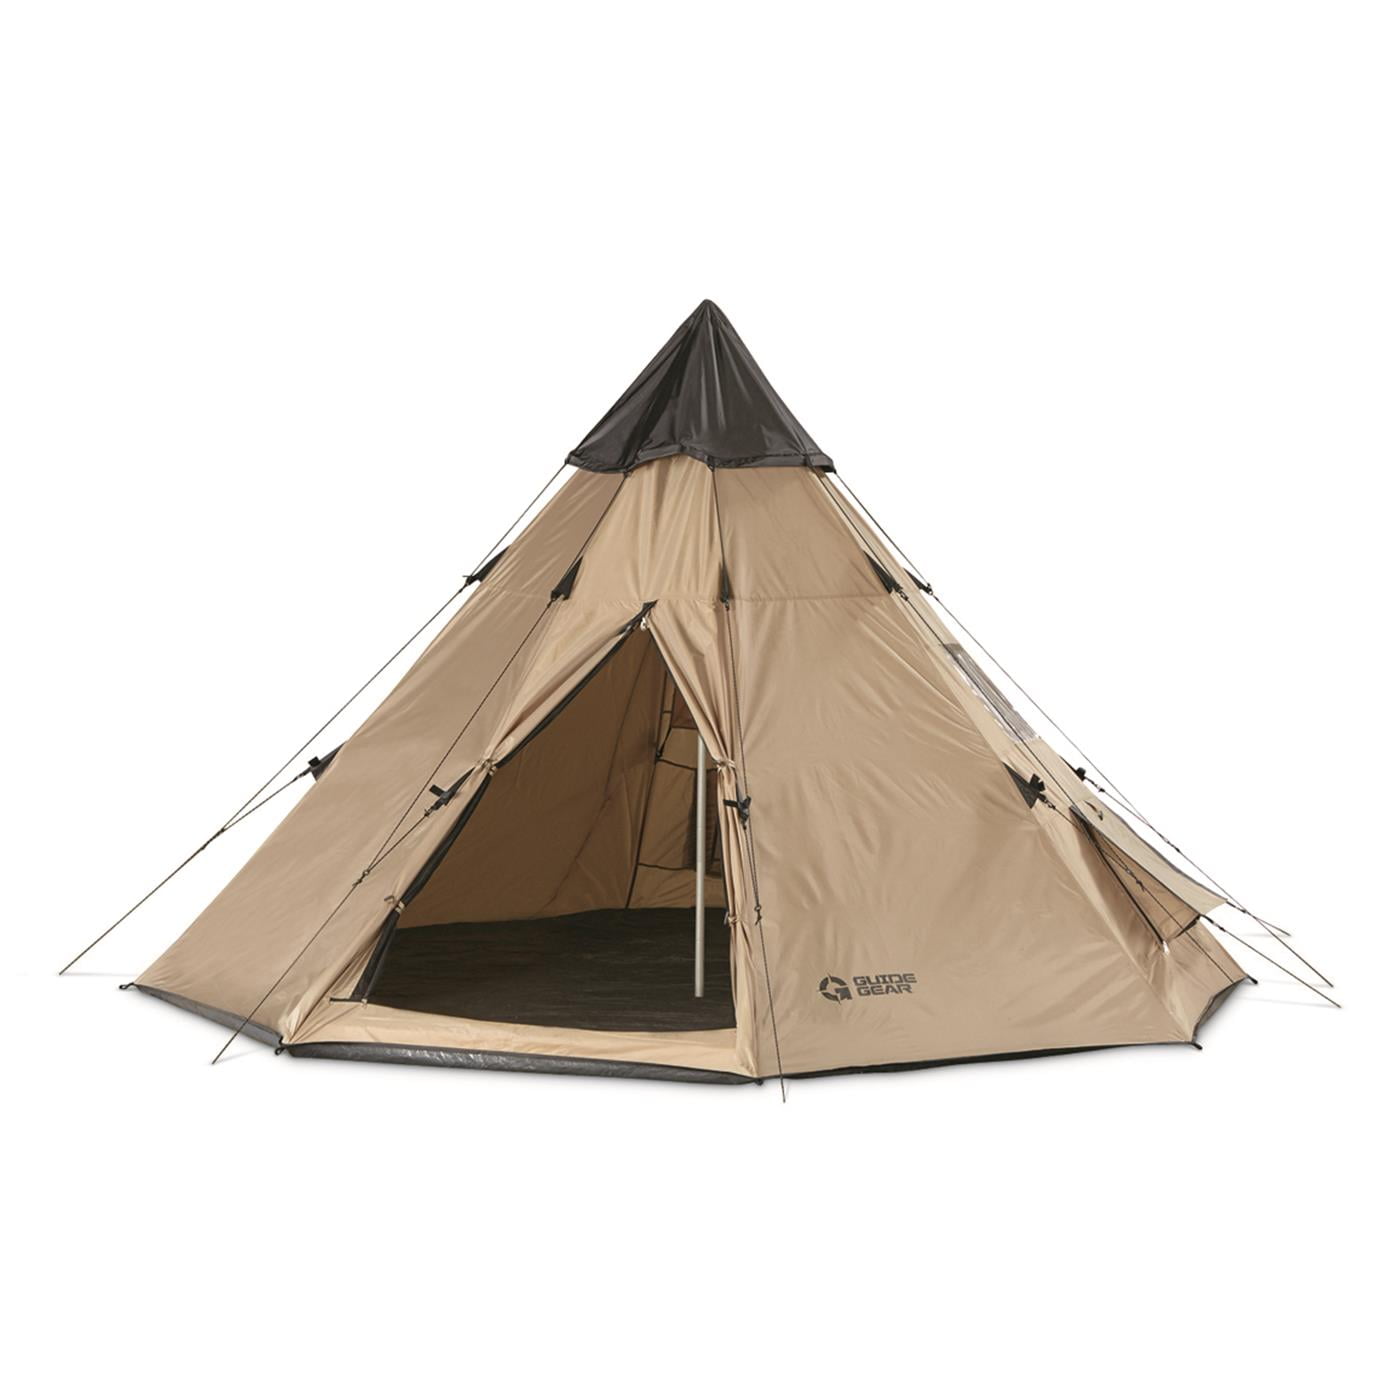 Een computer gebruiken maak je geïrriteerd Drastisch Guide Gear 10' x 10' Teepee Tent for Adults Outdoor Camping, 2-Person,  Instant Easy Set-Up Waterproof 4-Season Tents for Backpacking, Hiking -  Walmart.com